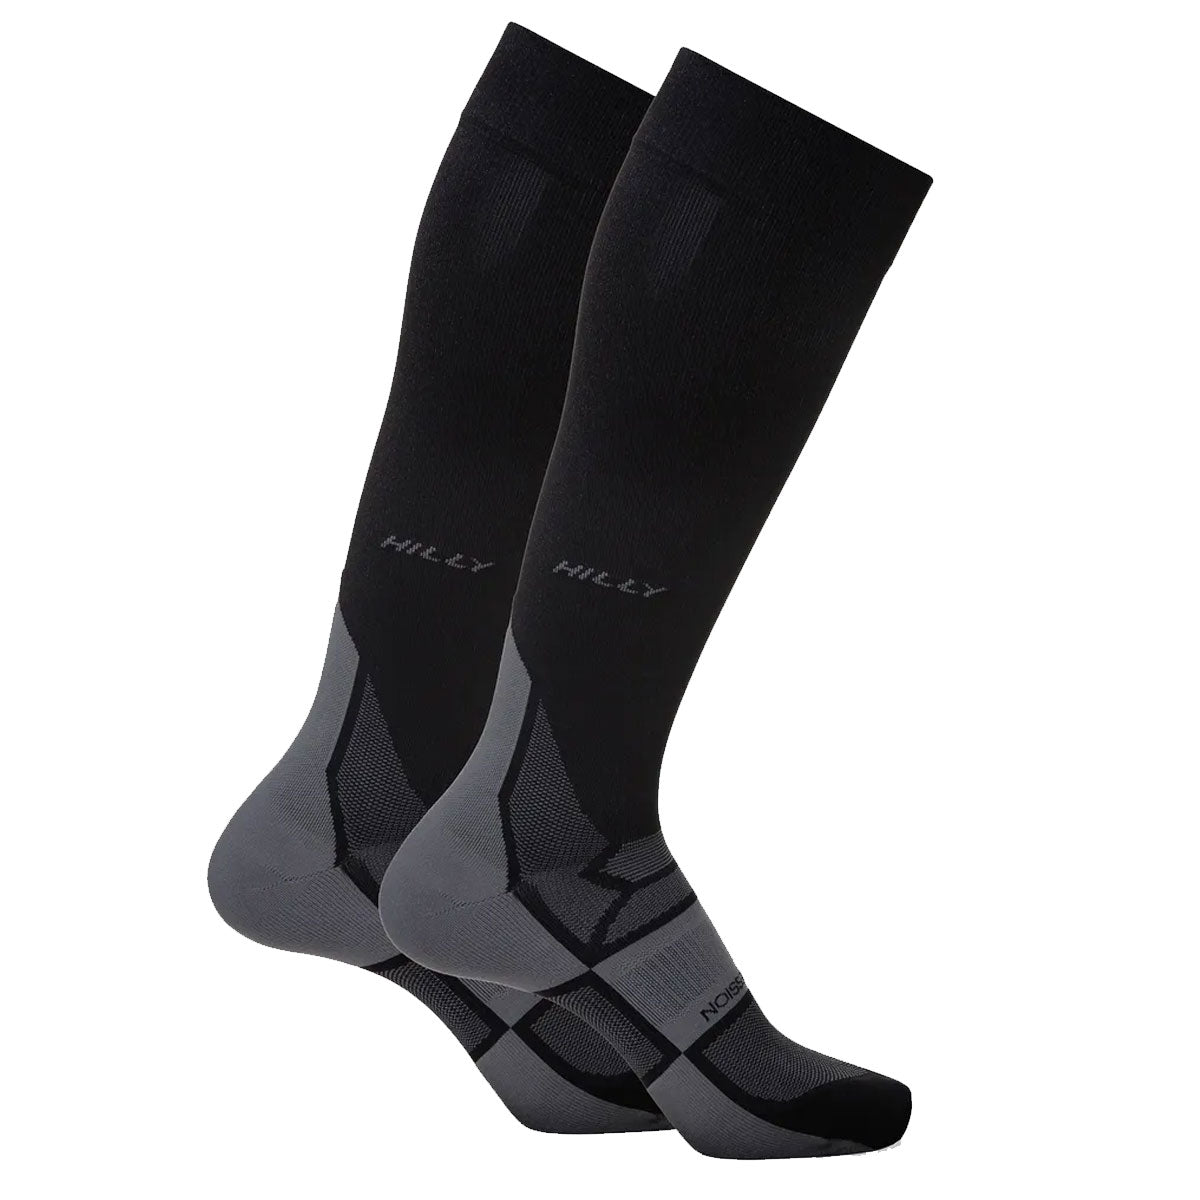 Hilly Pulse Compression Socks - Mens - Black/Grey